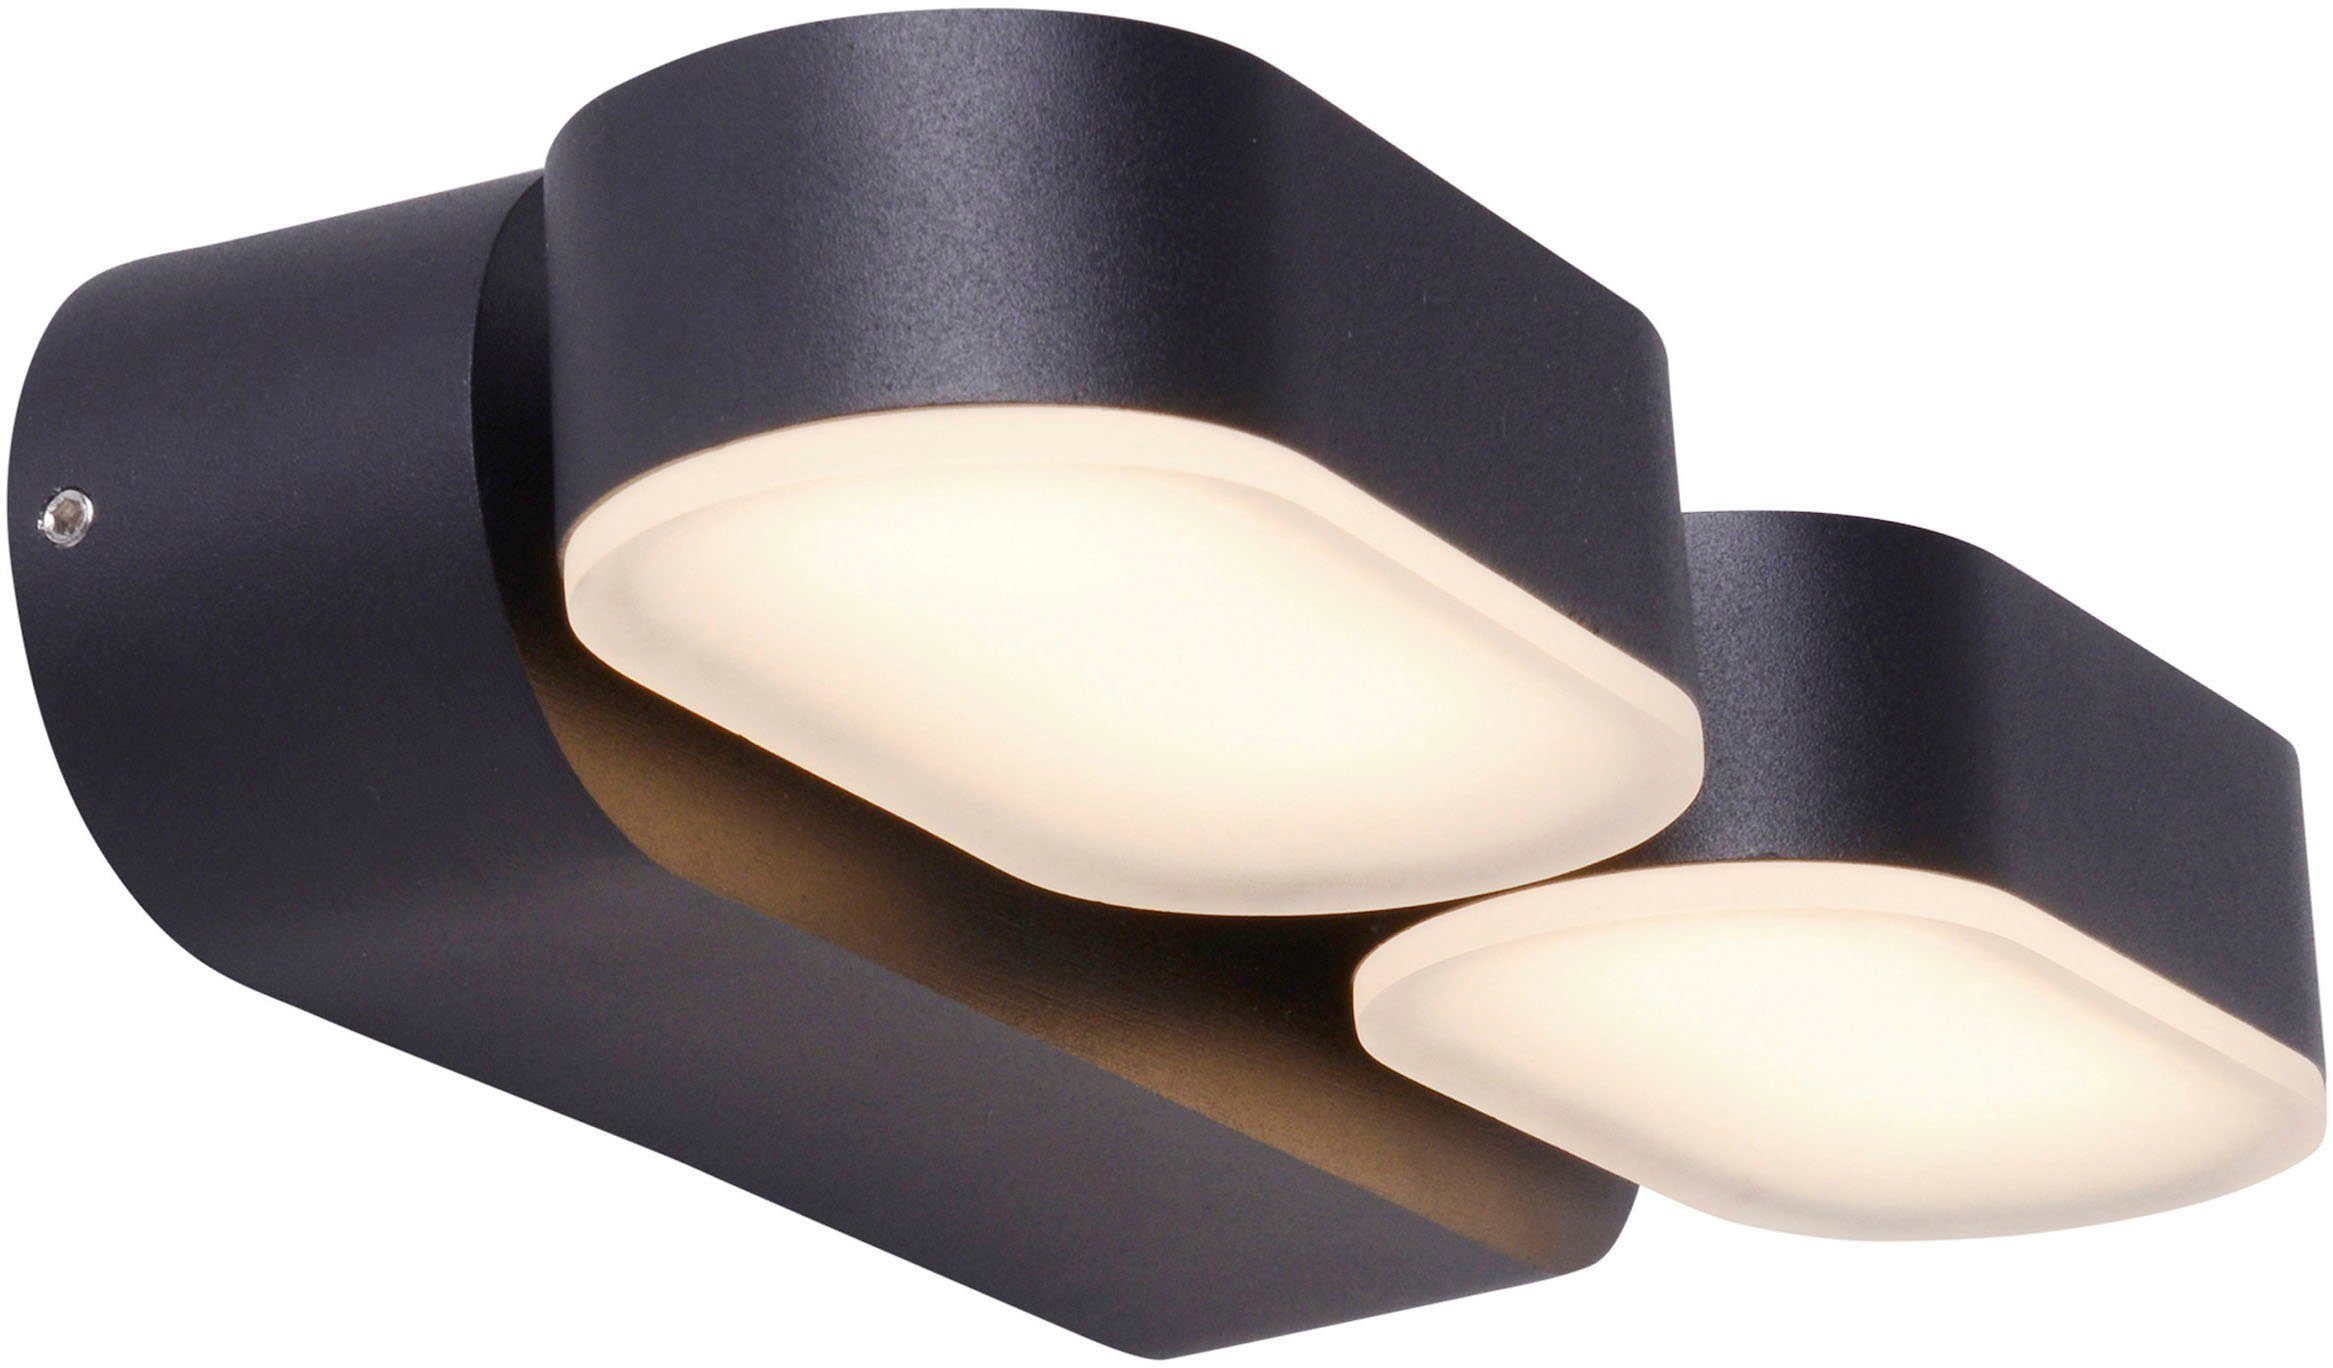 LED schwarz LED Außen-Wandleuchte Warmweiß, incl. wechselbar, 54 LED IP warmweiß 60 bewegliche näve 2 Lichtblöcke Motus,